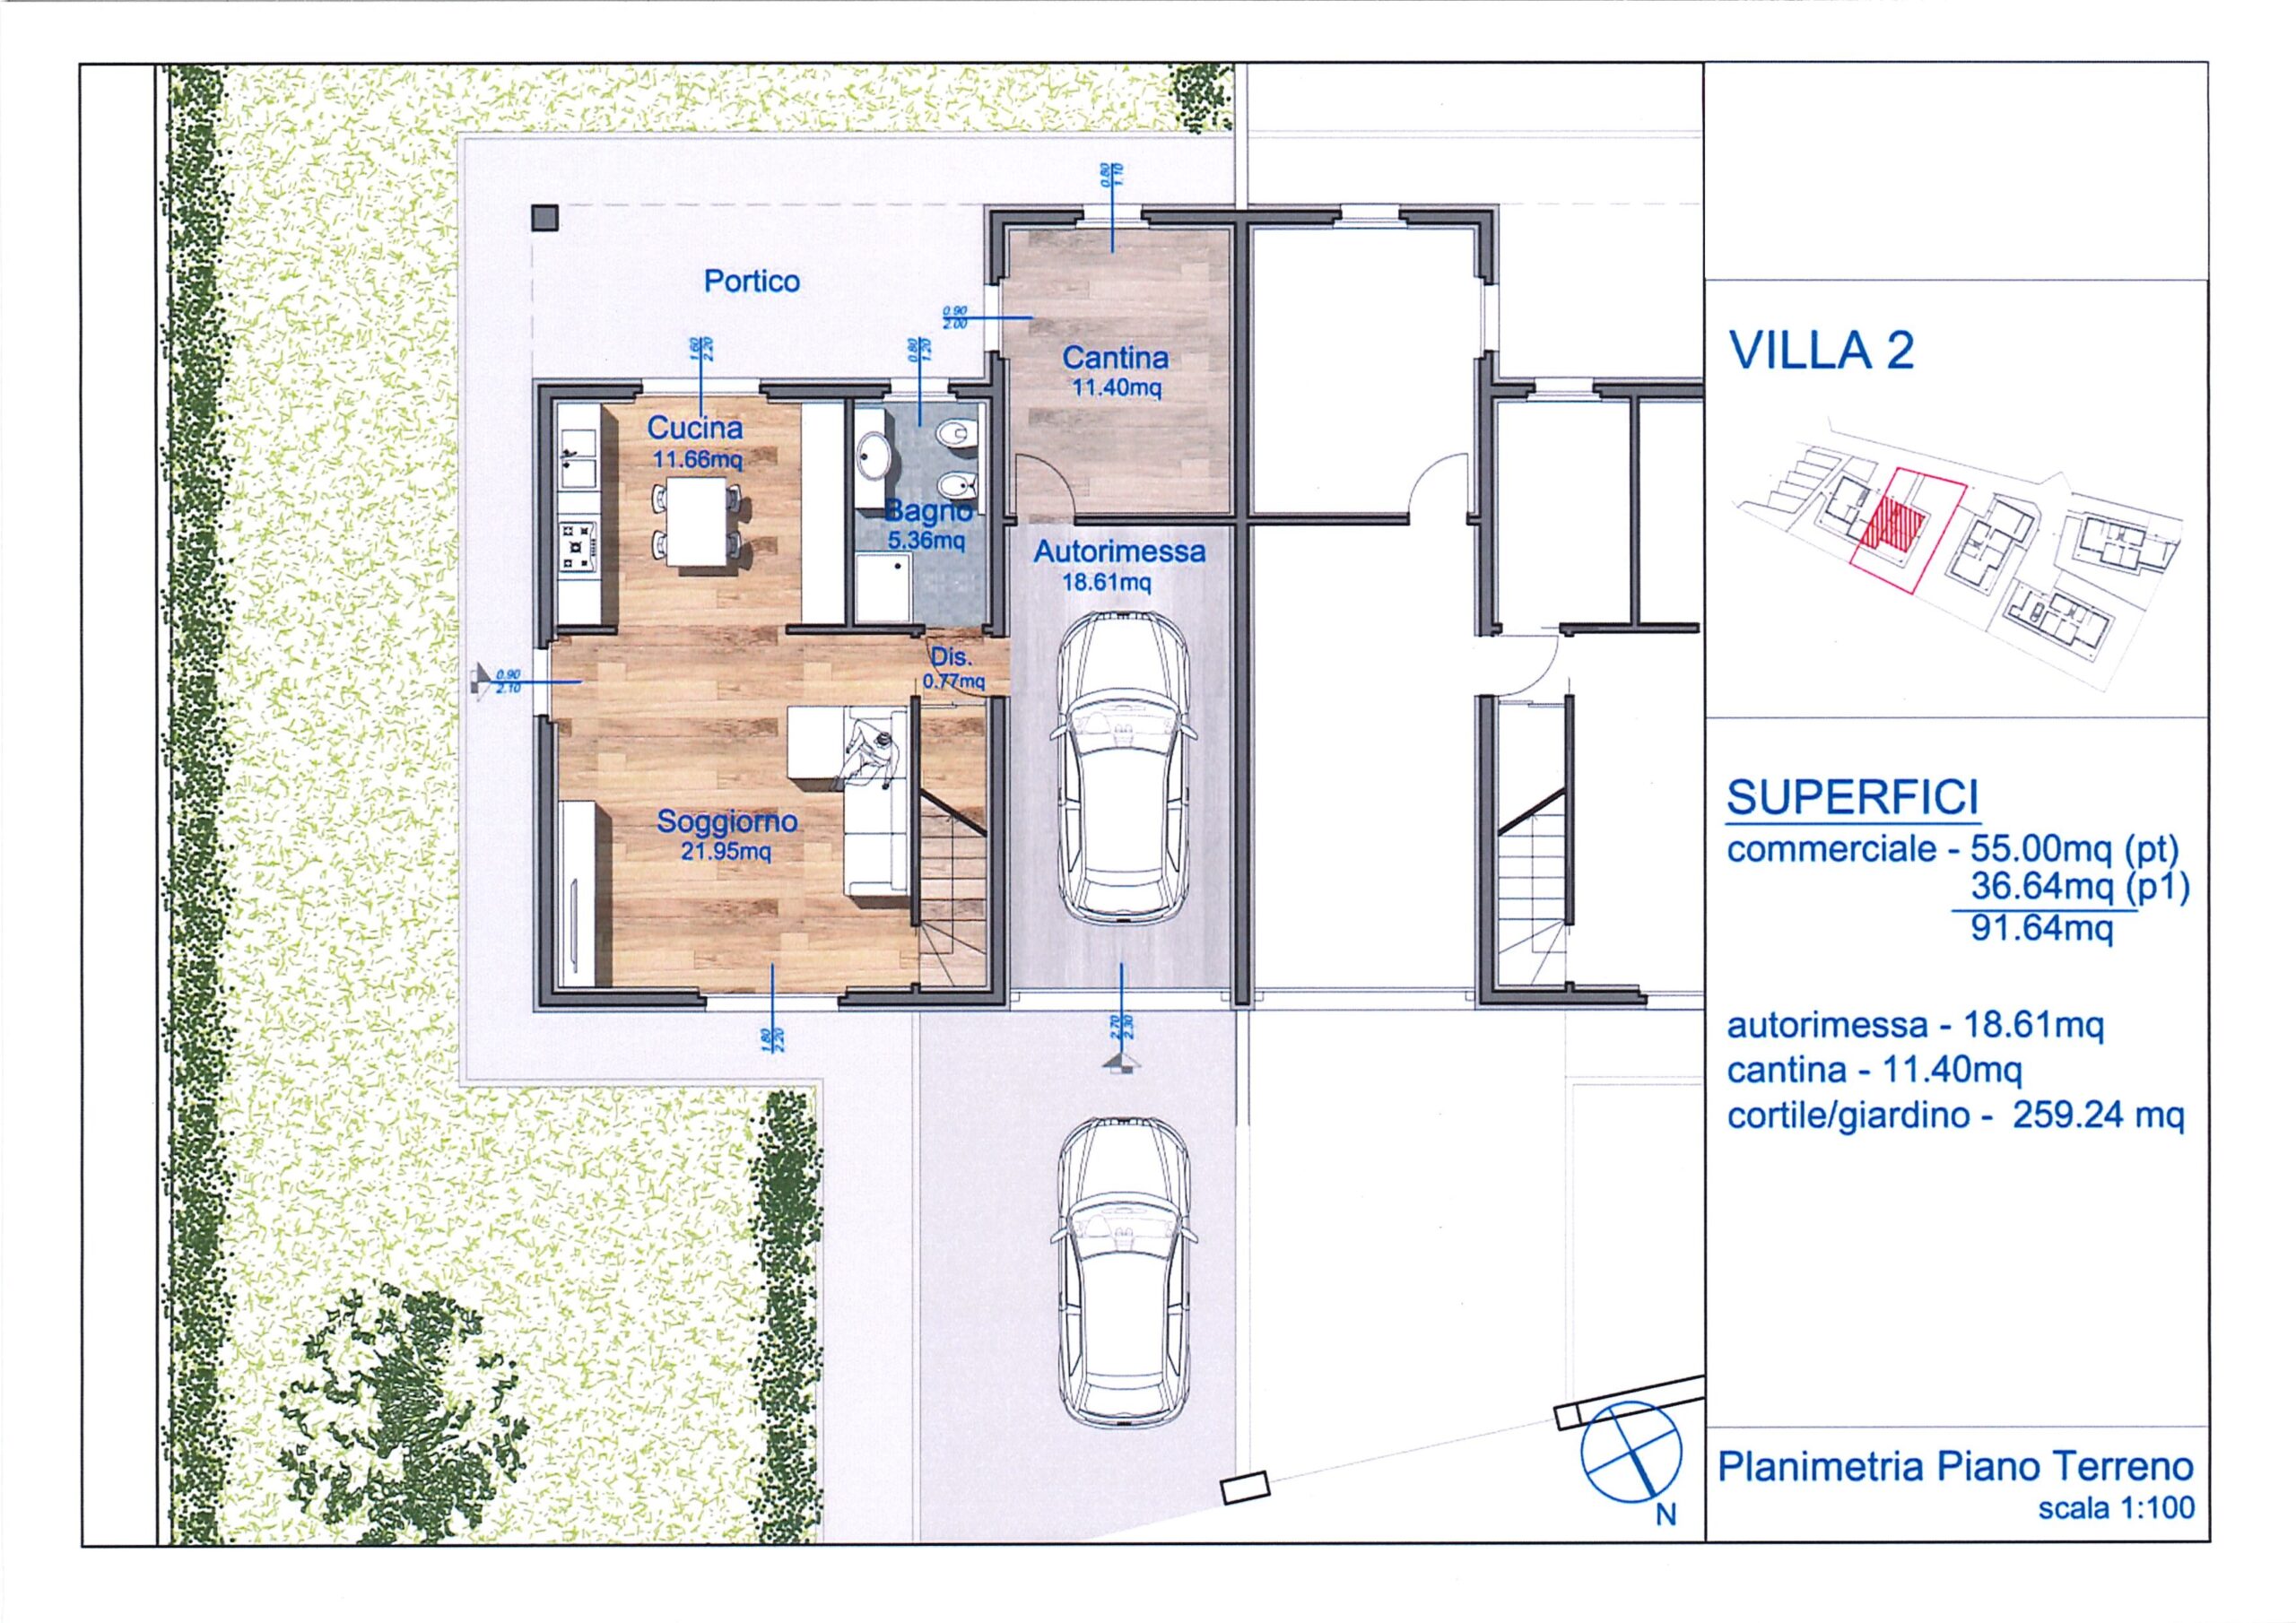 Nuove costruzioni, classe A4, Gravellona Toce – Porzione villa 1-2